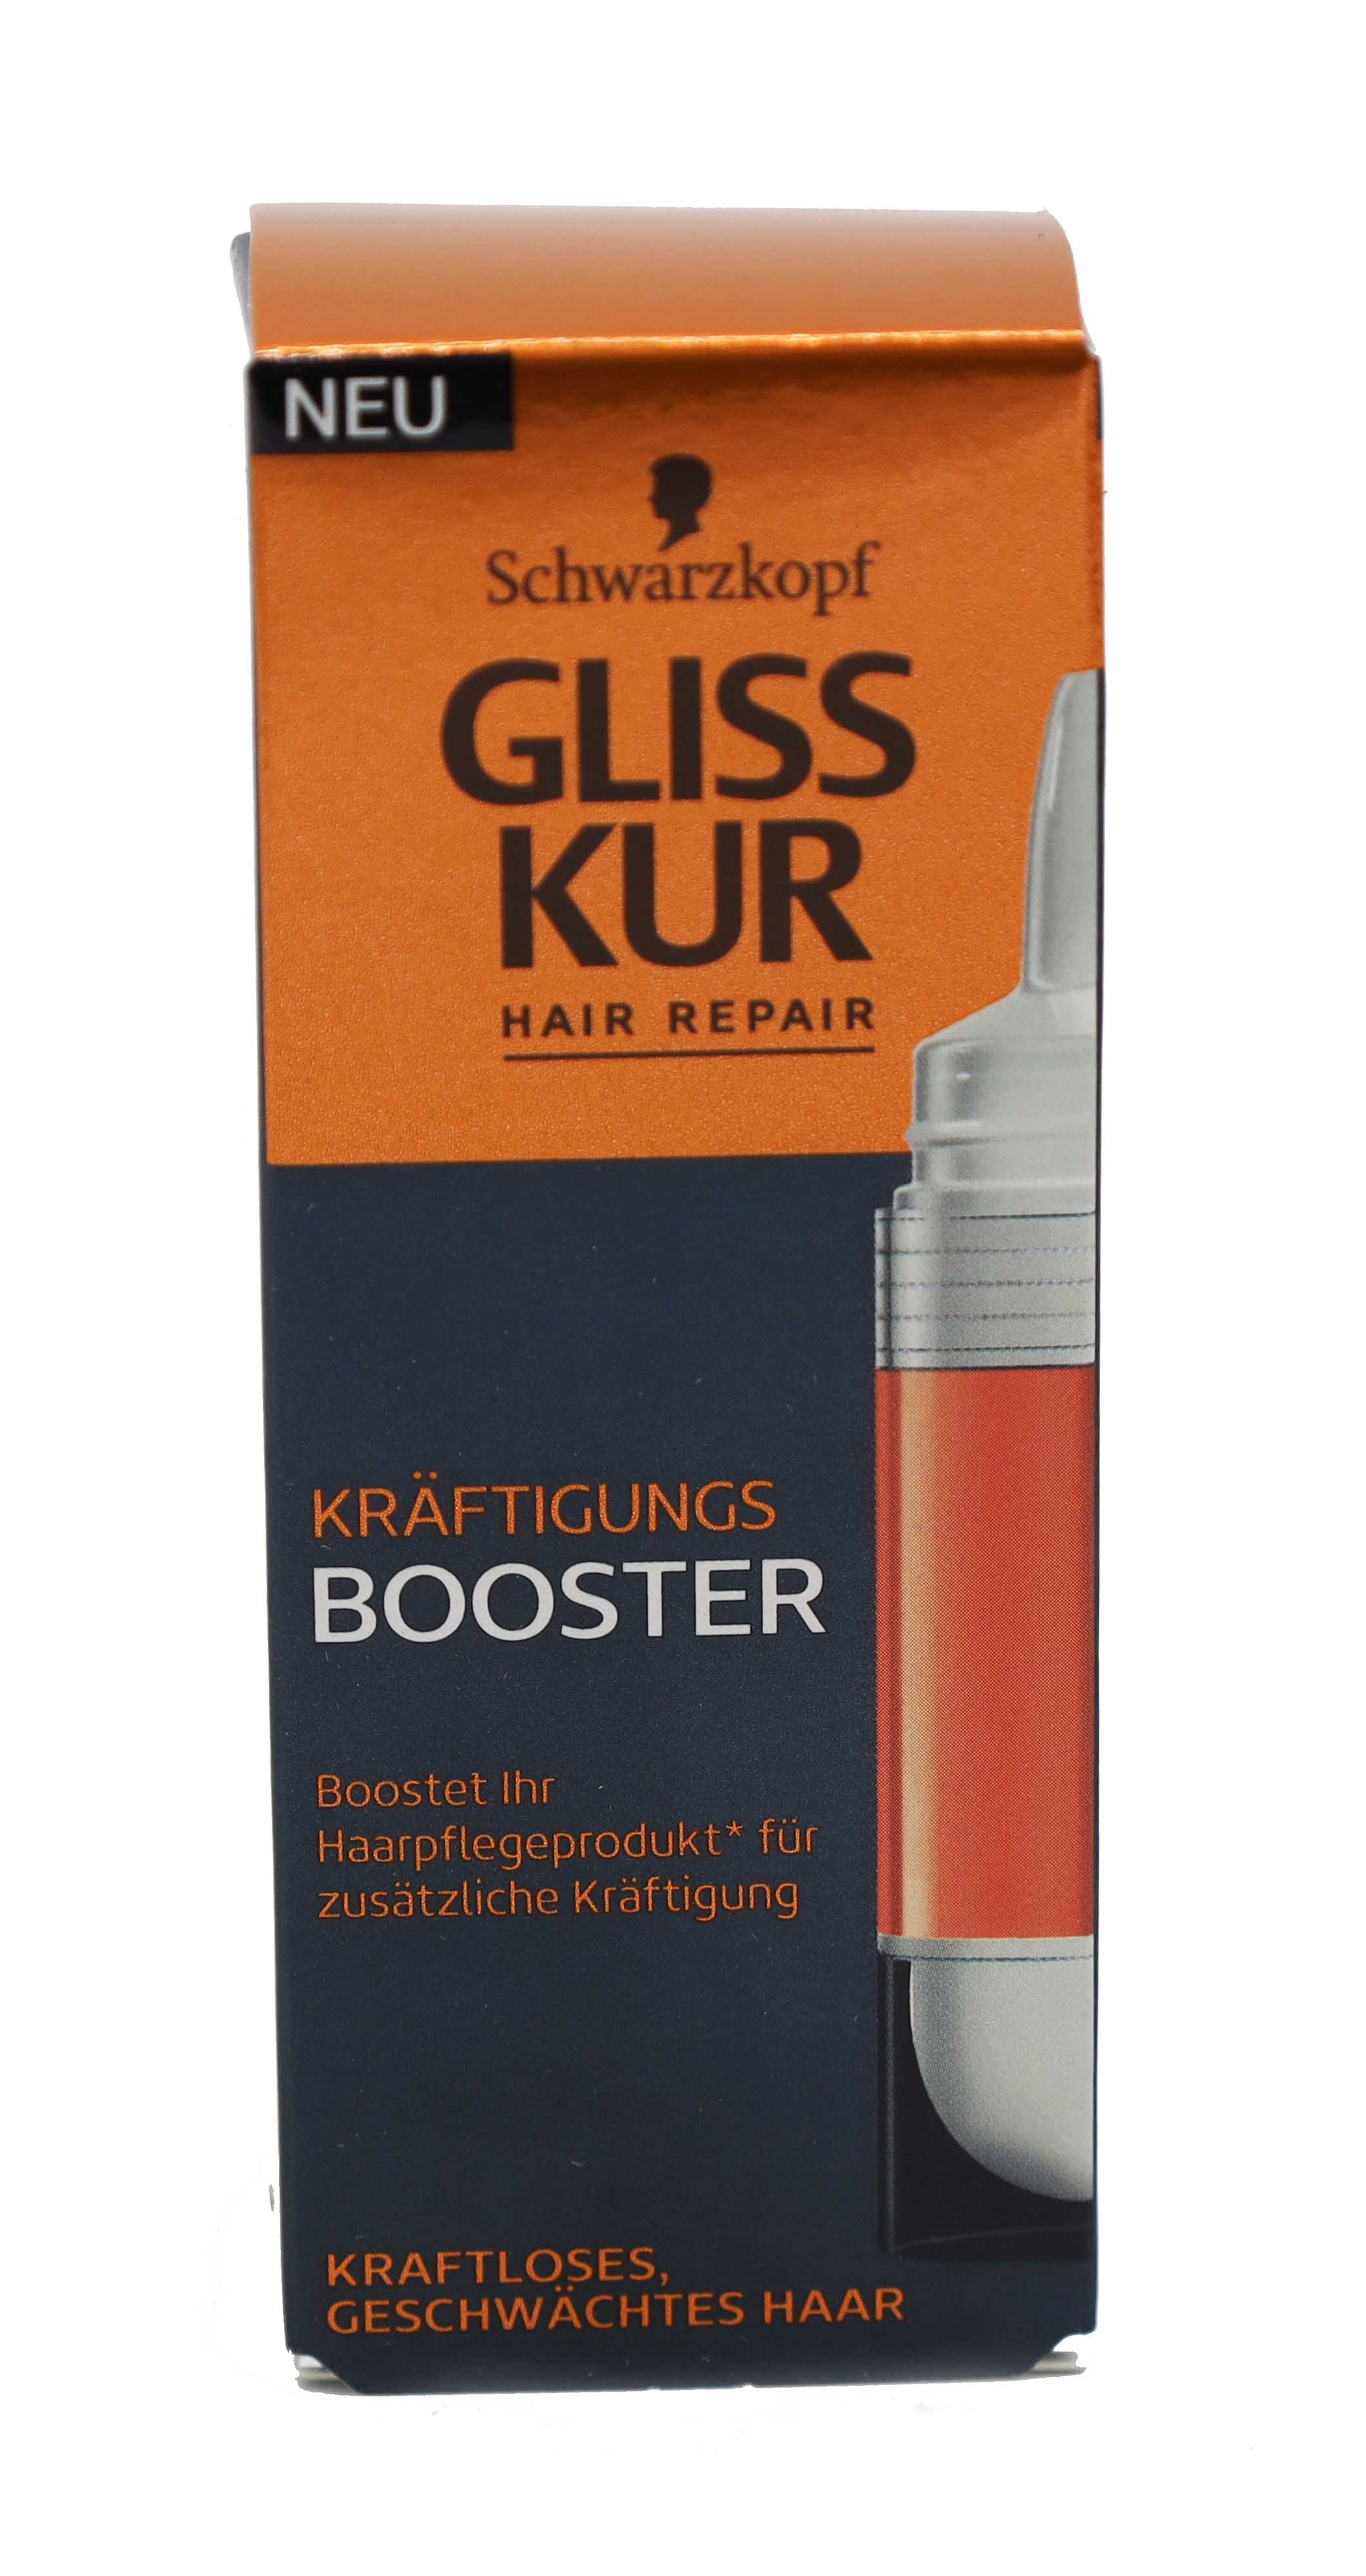 Gliss Kur Hair Repair Kräftigungs Booster 15ml